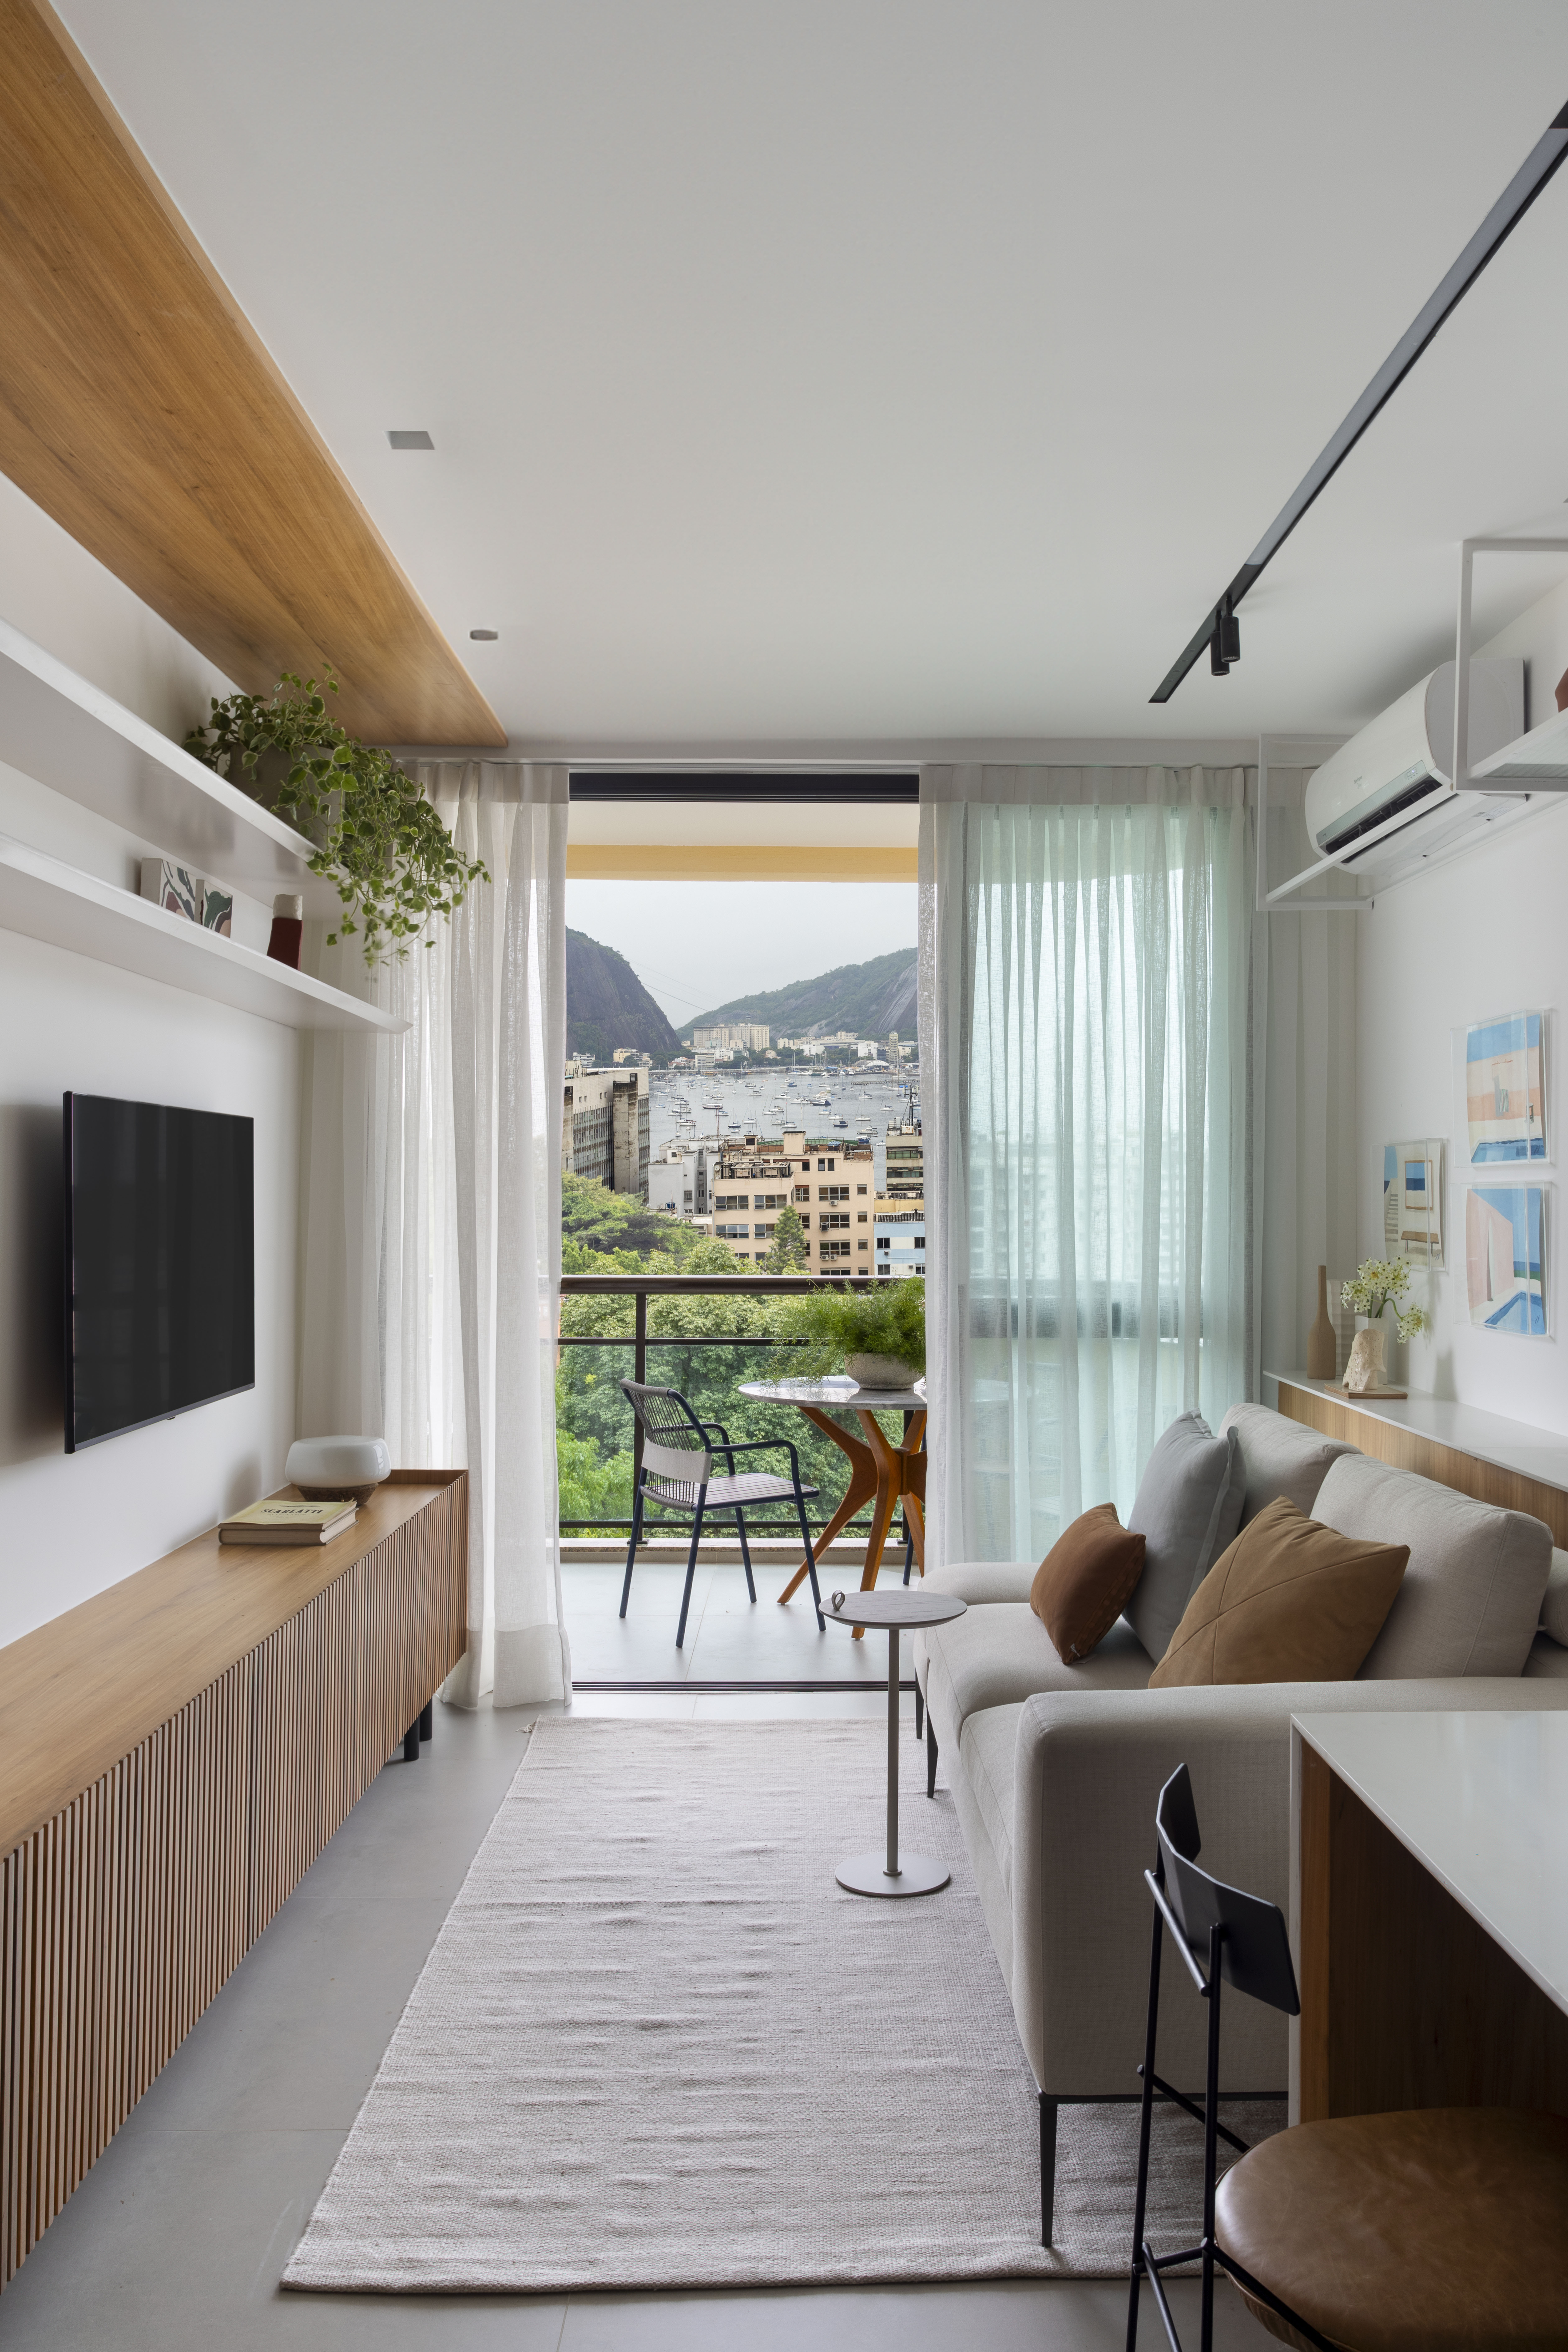 Branco e madeira criam décor cozy em apartamento de 70 m². Projeto de Rafael Ramos. Na foto, sala de tv com aparador ripado e bancos escondidos.